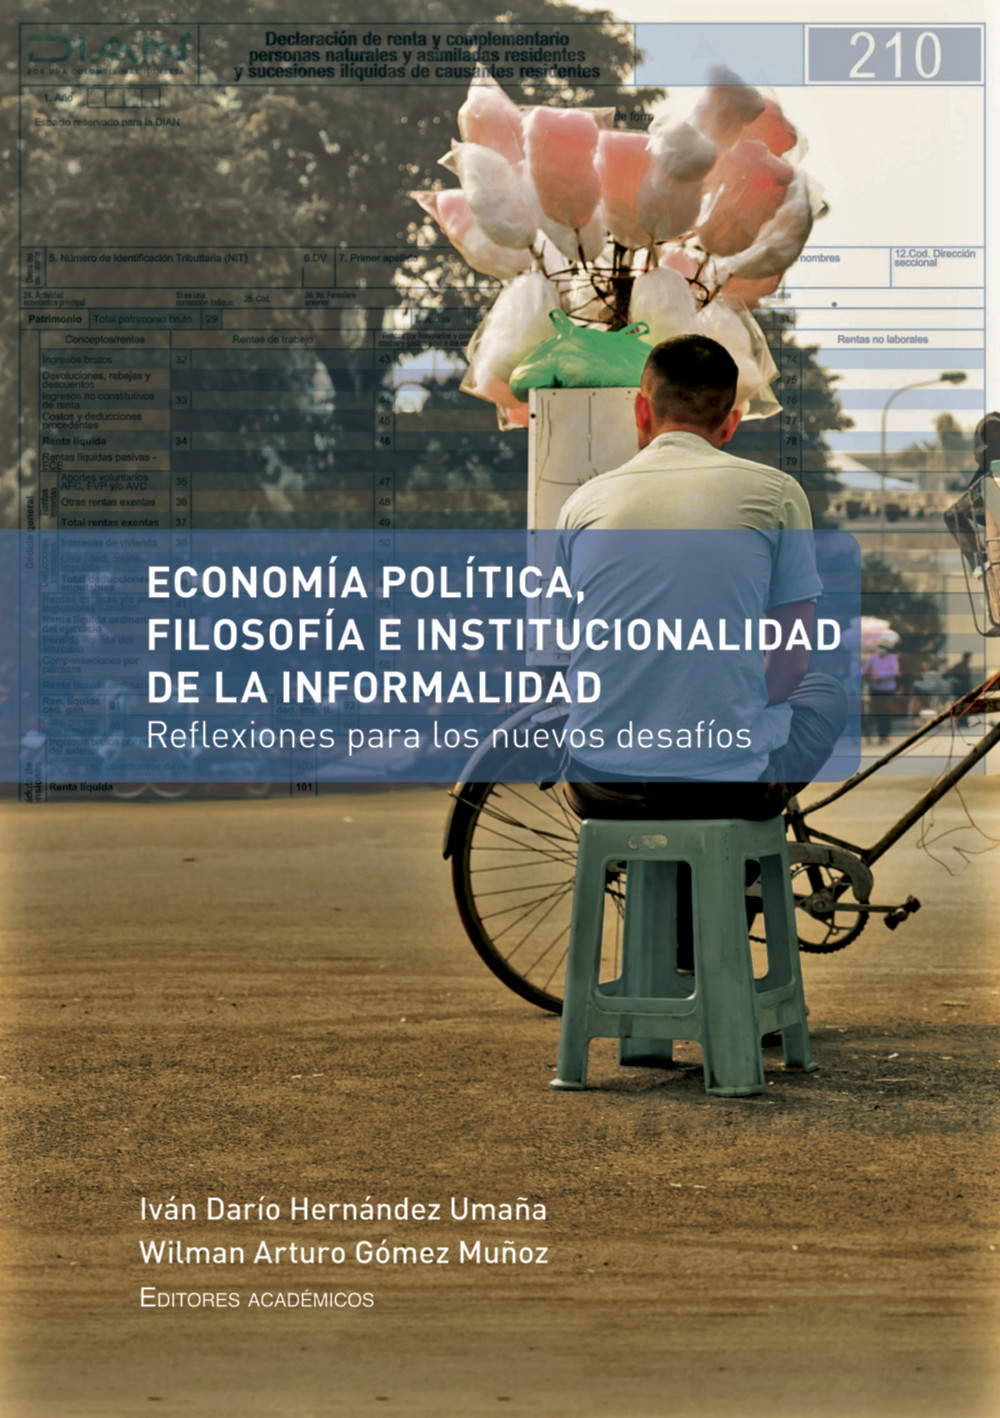 Imagen de portada del libro Economía política, filosofía e institucionalidad de la informalidad